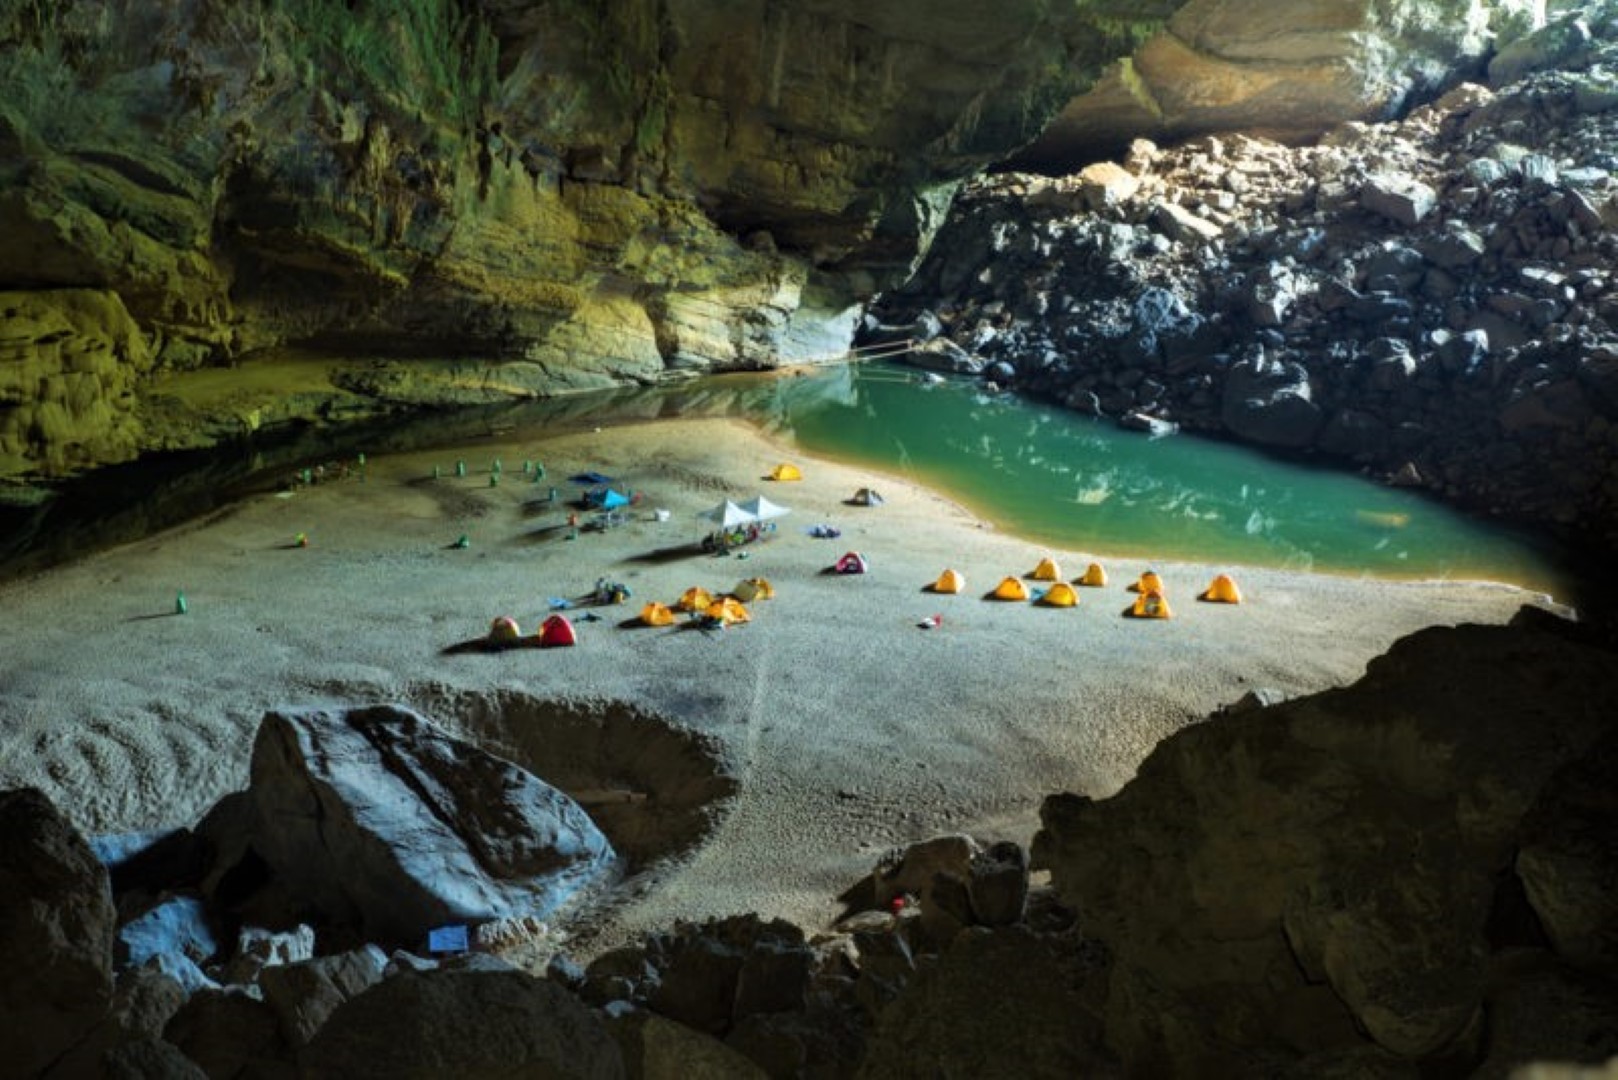 ถ้ำที่ใหญ่ที่สุดในโลกคือ ถ้ำเซินด่อง (Mountain River Cave) ในเวียดนาม